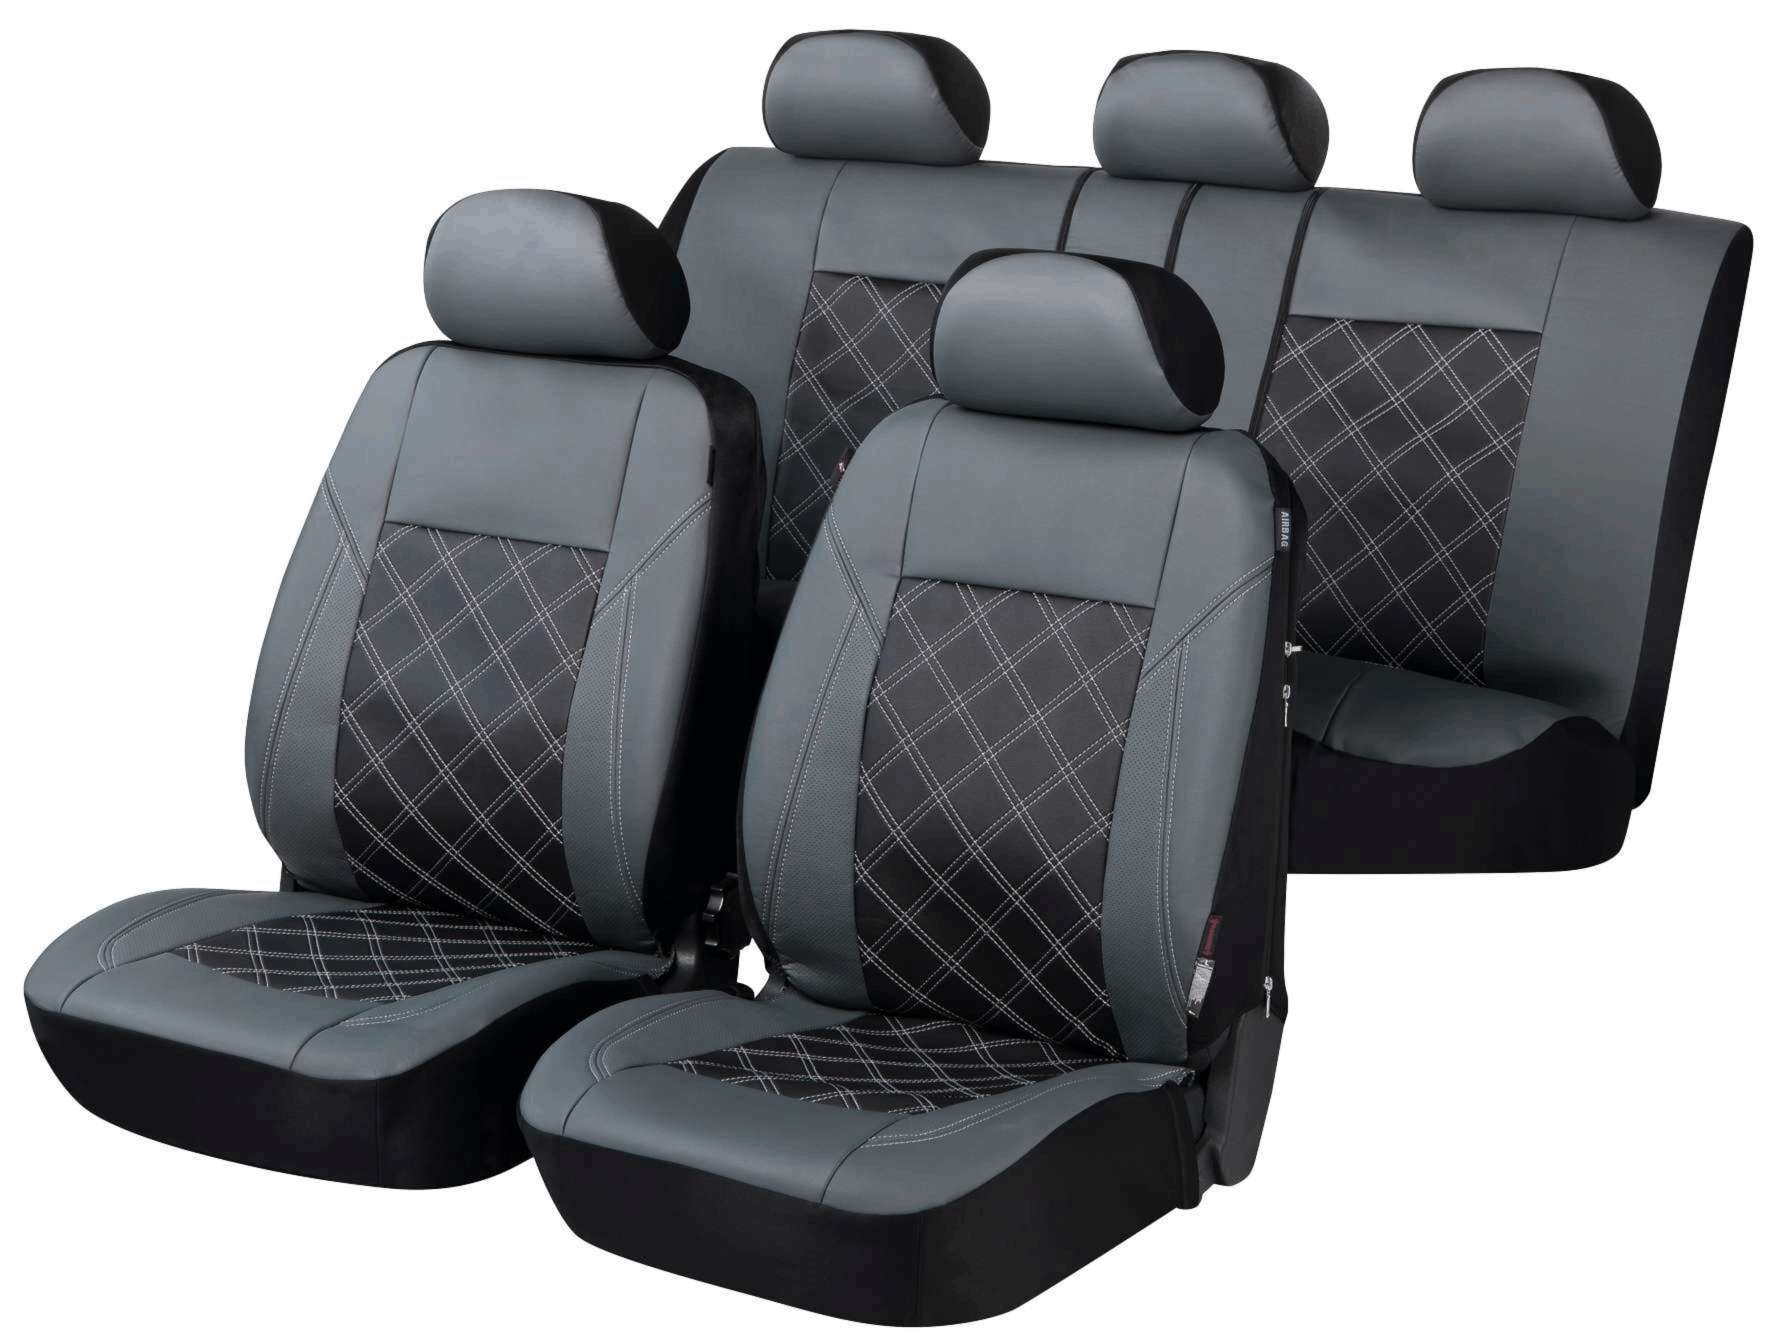 Auto stoelbeschermer Durham met Zipper ZIPP-IT Deluxe Autostoelhoes, set, 2 stoelbeschermer voor voorstoel, 1 stoelbeschermer voor achterbank grijs